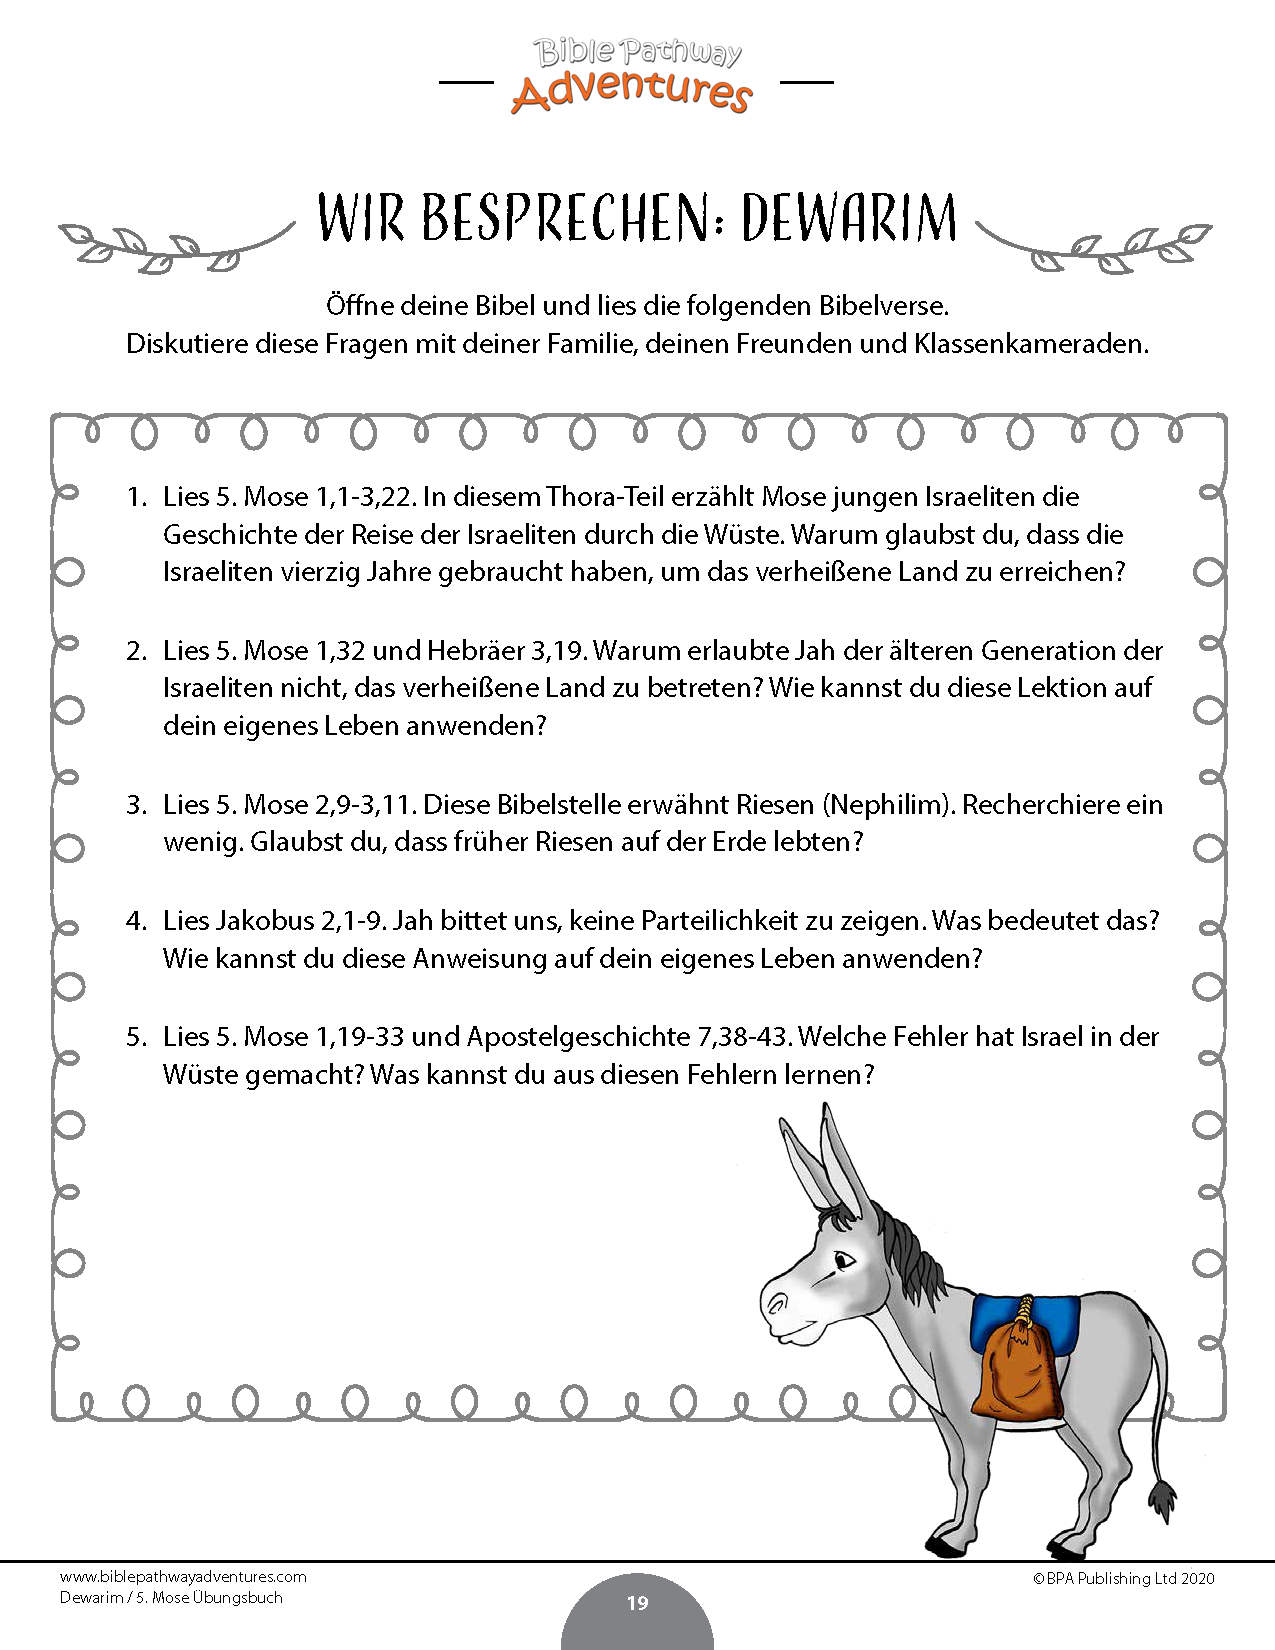 Dewarim / 5. Mose Übungsbuch (PDF)